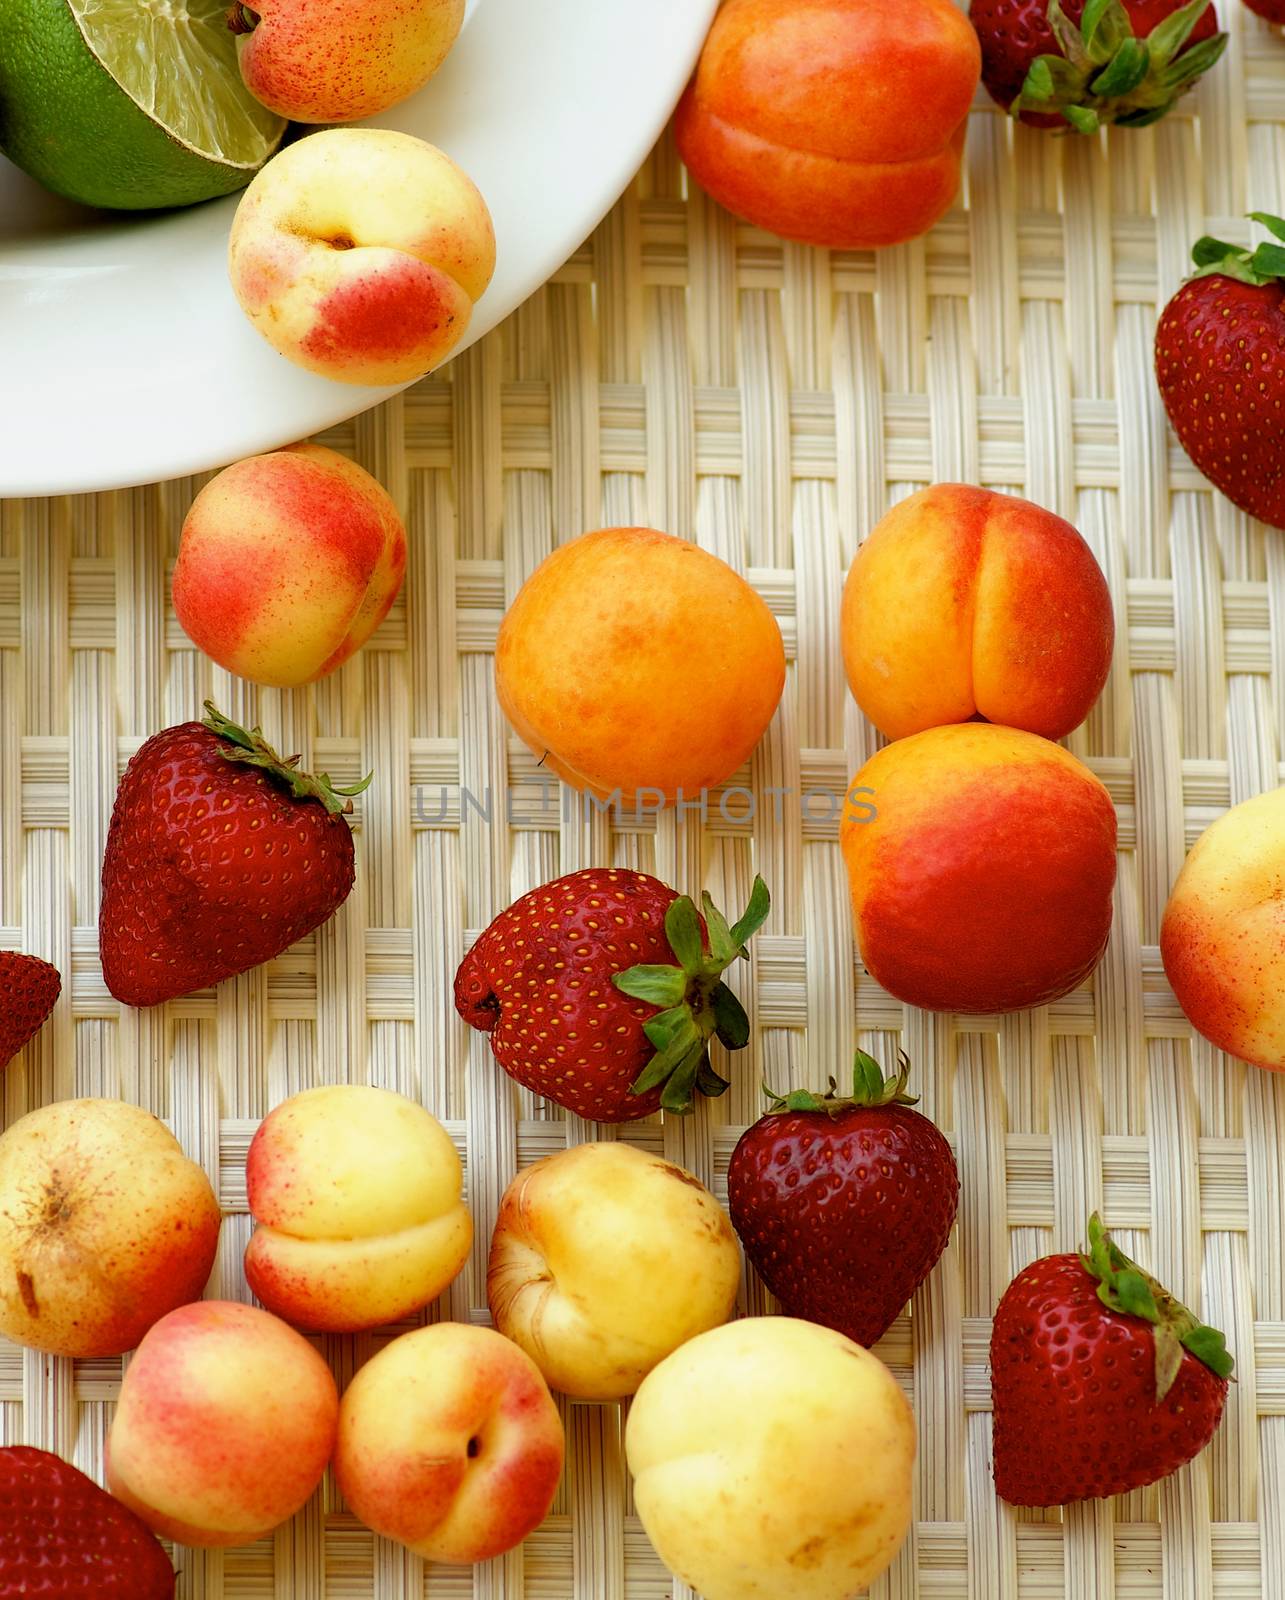 Various Summer Fruits by zhekos